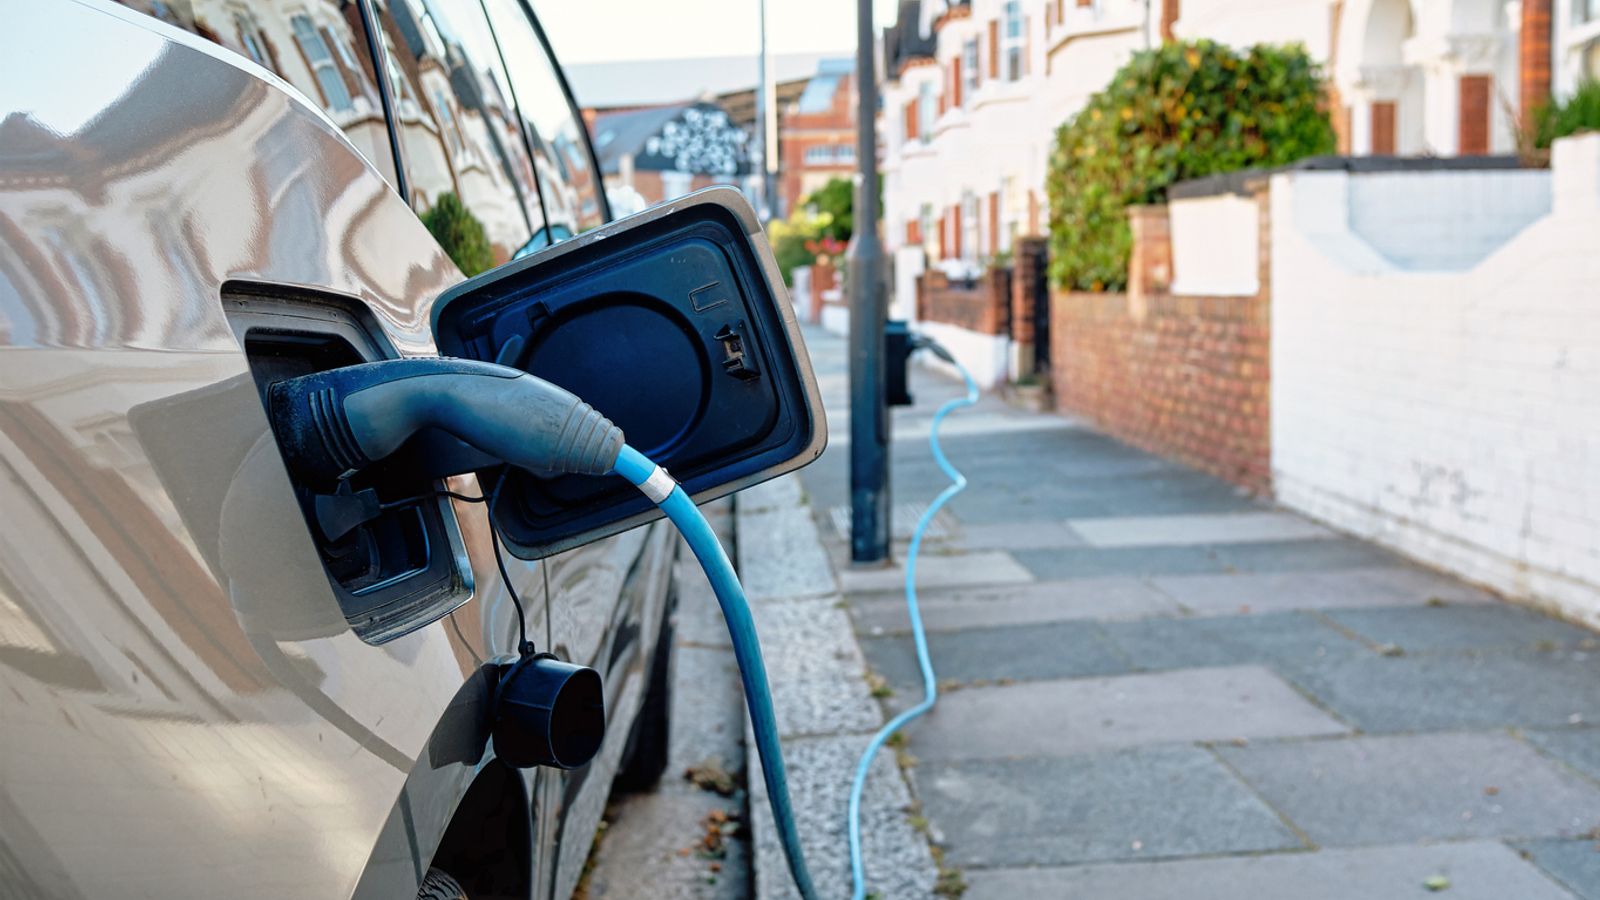 Les ménages pourraient utiliser les batteries des véhicules électriques pour alimenter leurs appareils – mais il y a des mises en garde |  Nouvelles du Royaume-Uni